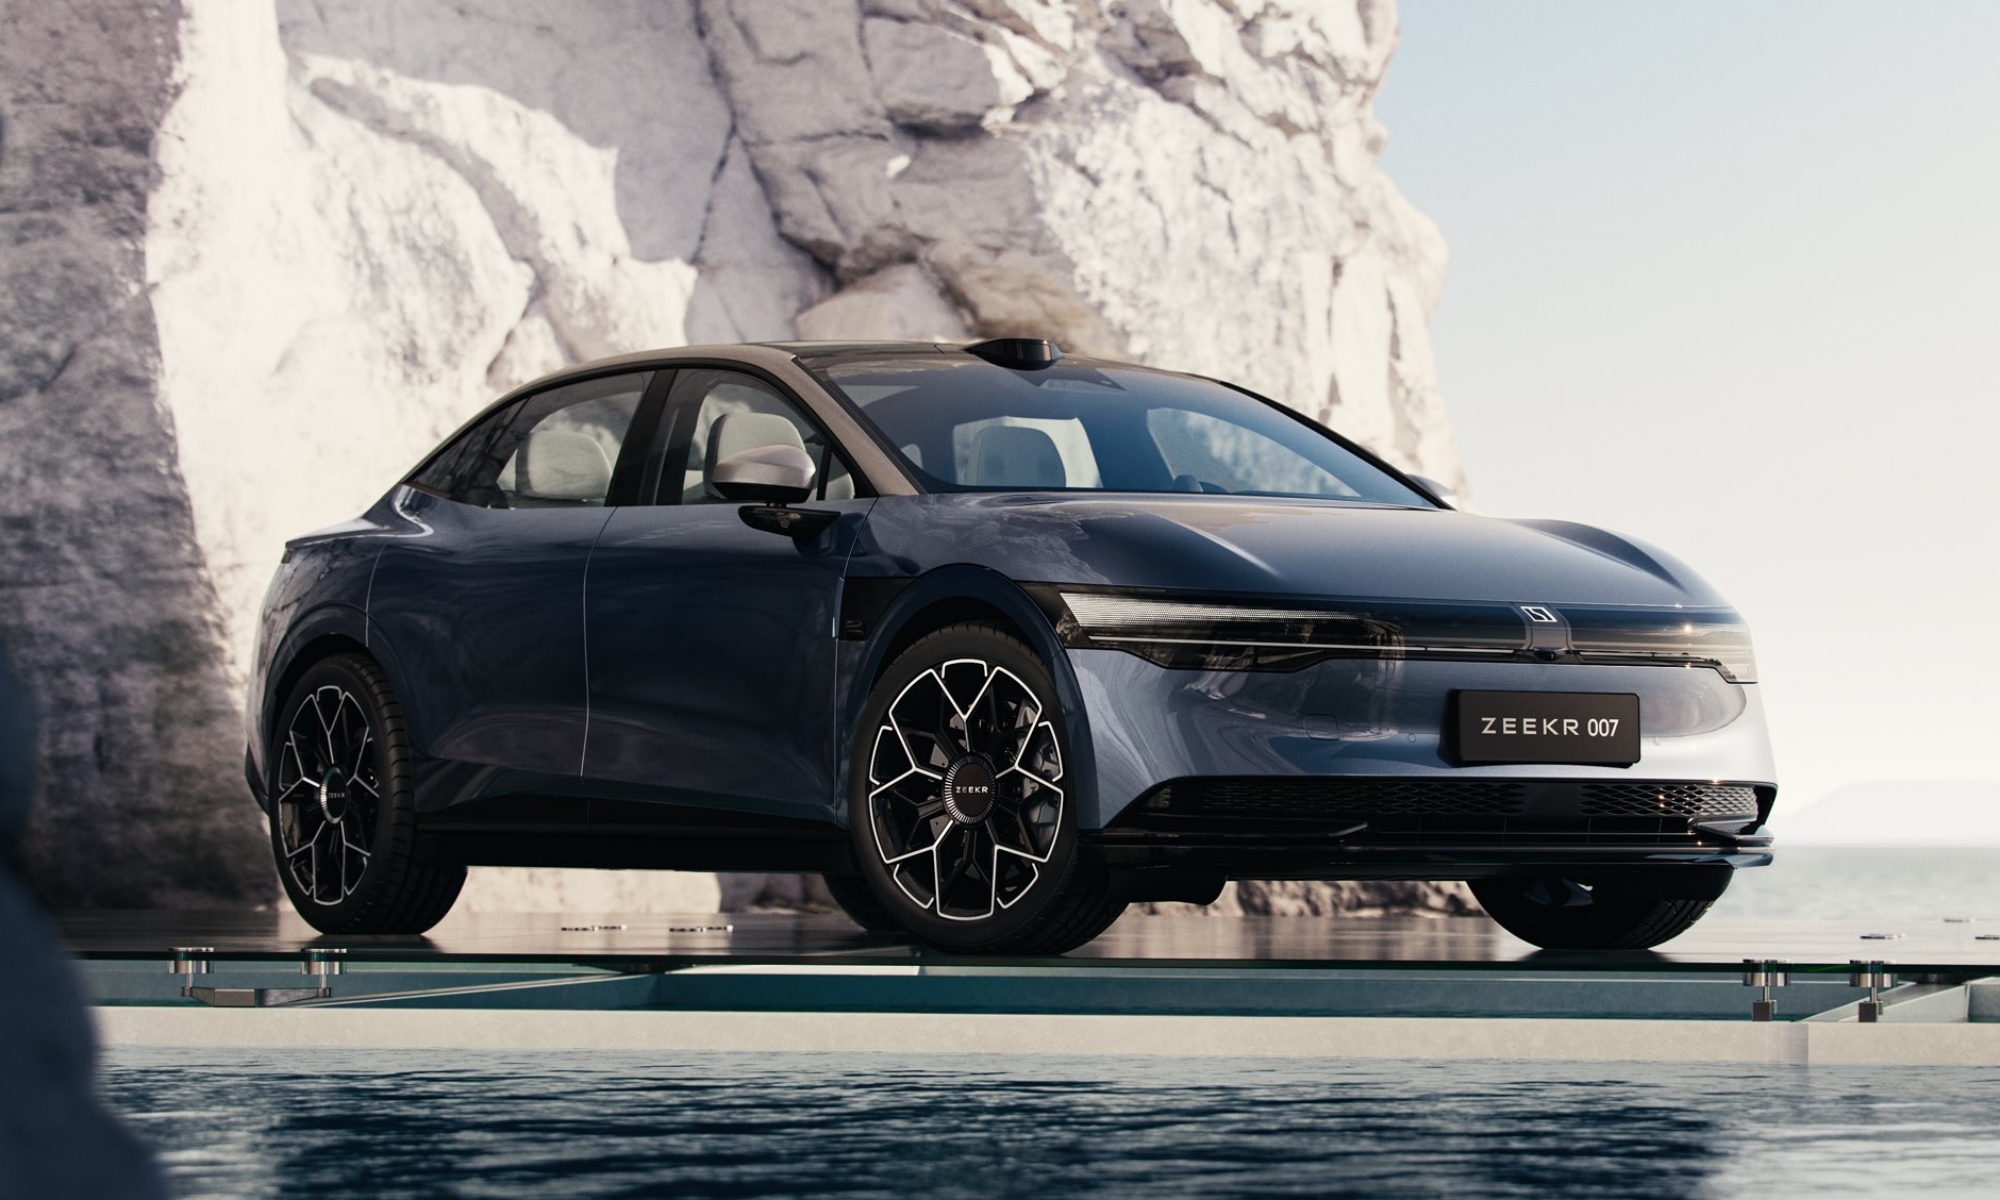 La imagen del 007 nos demuestra un coche elegante a medio camino entre berlina y SUV.